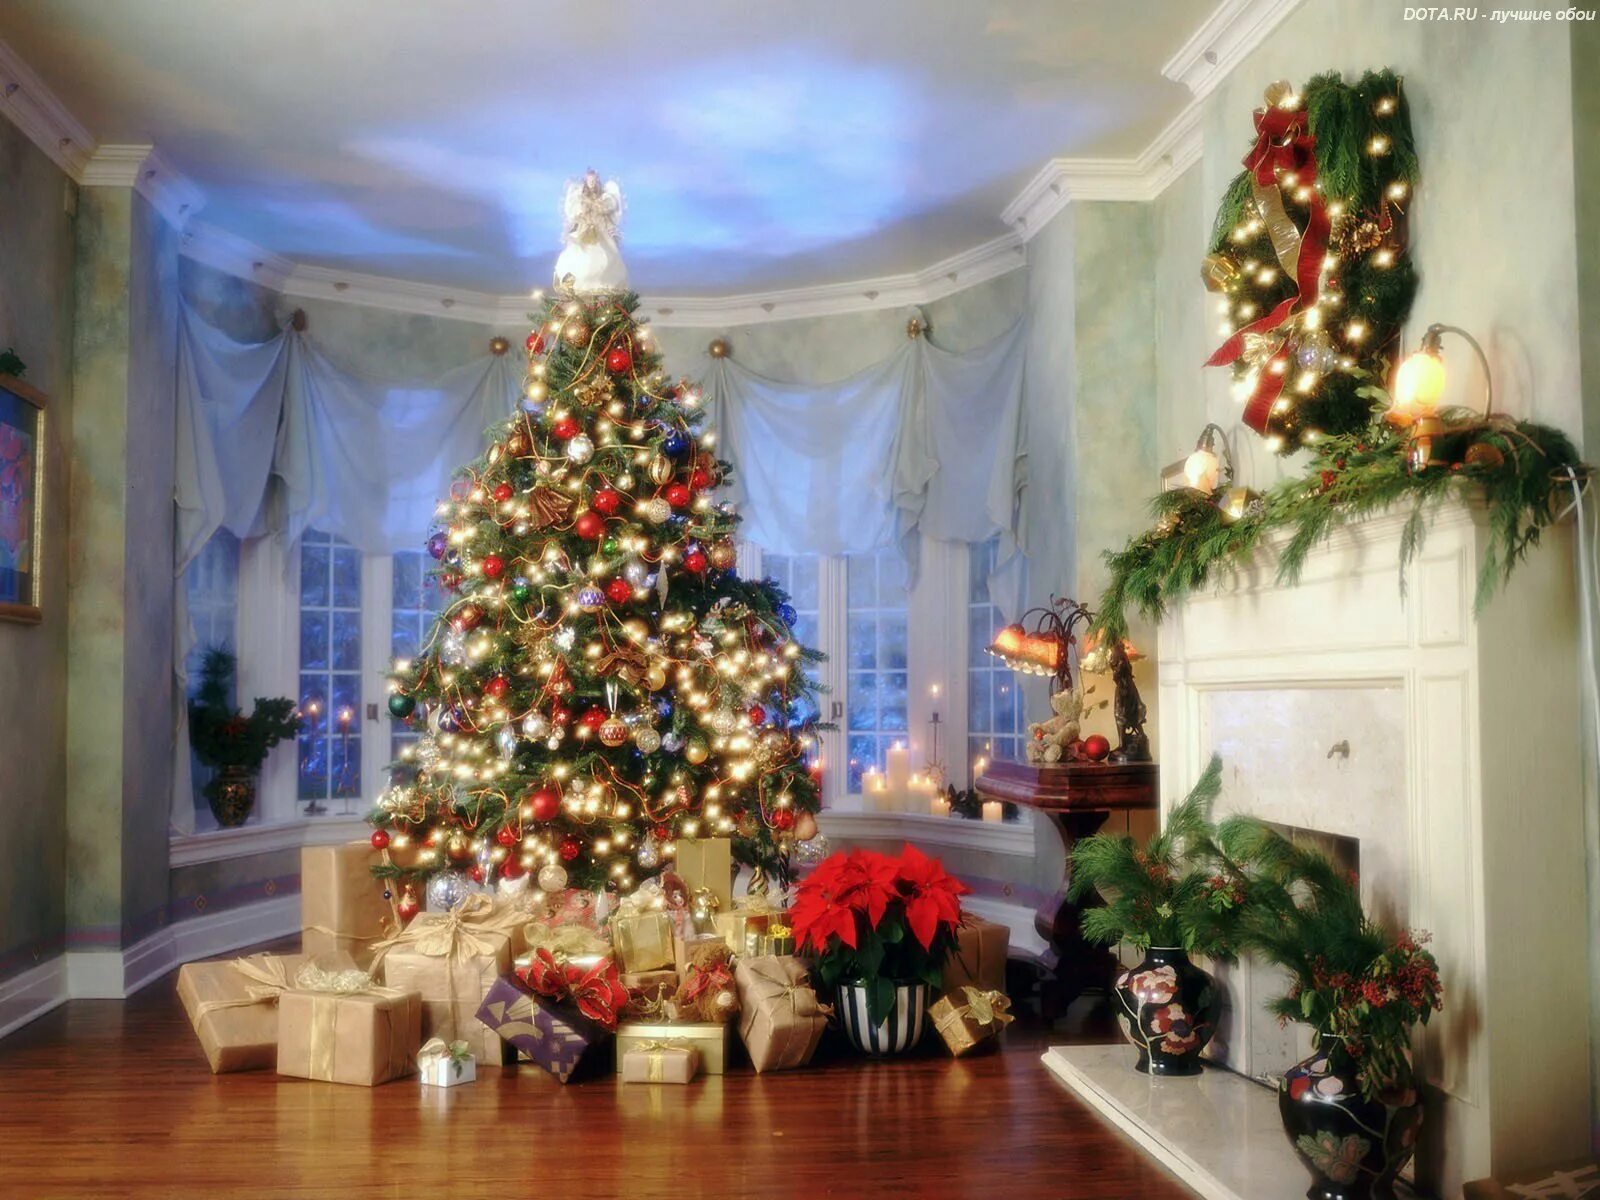 Посреди стояла красивая елка. Новогодняя елка. Елка в доме. Праздничная елка. Новогодняя елка с подарками.